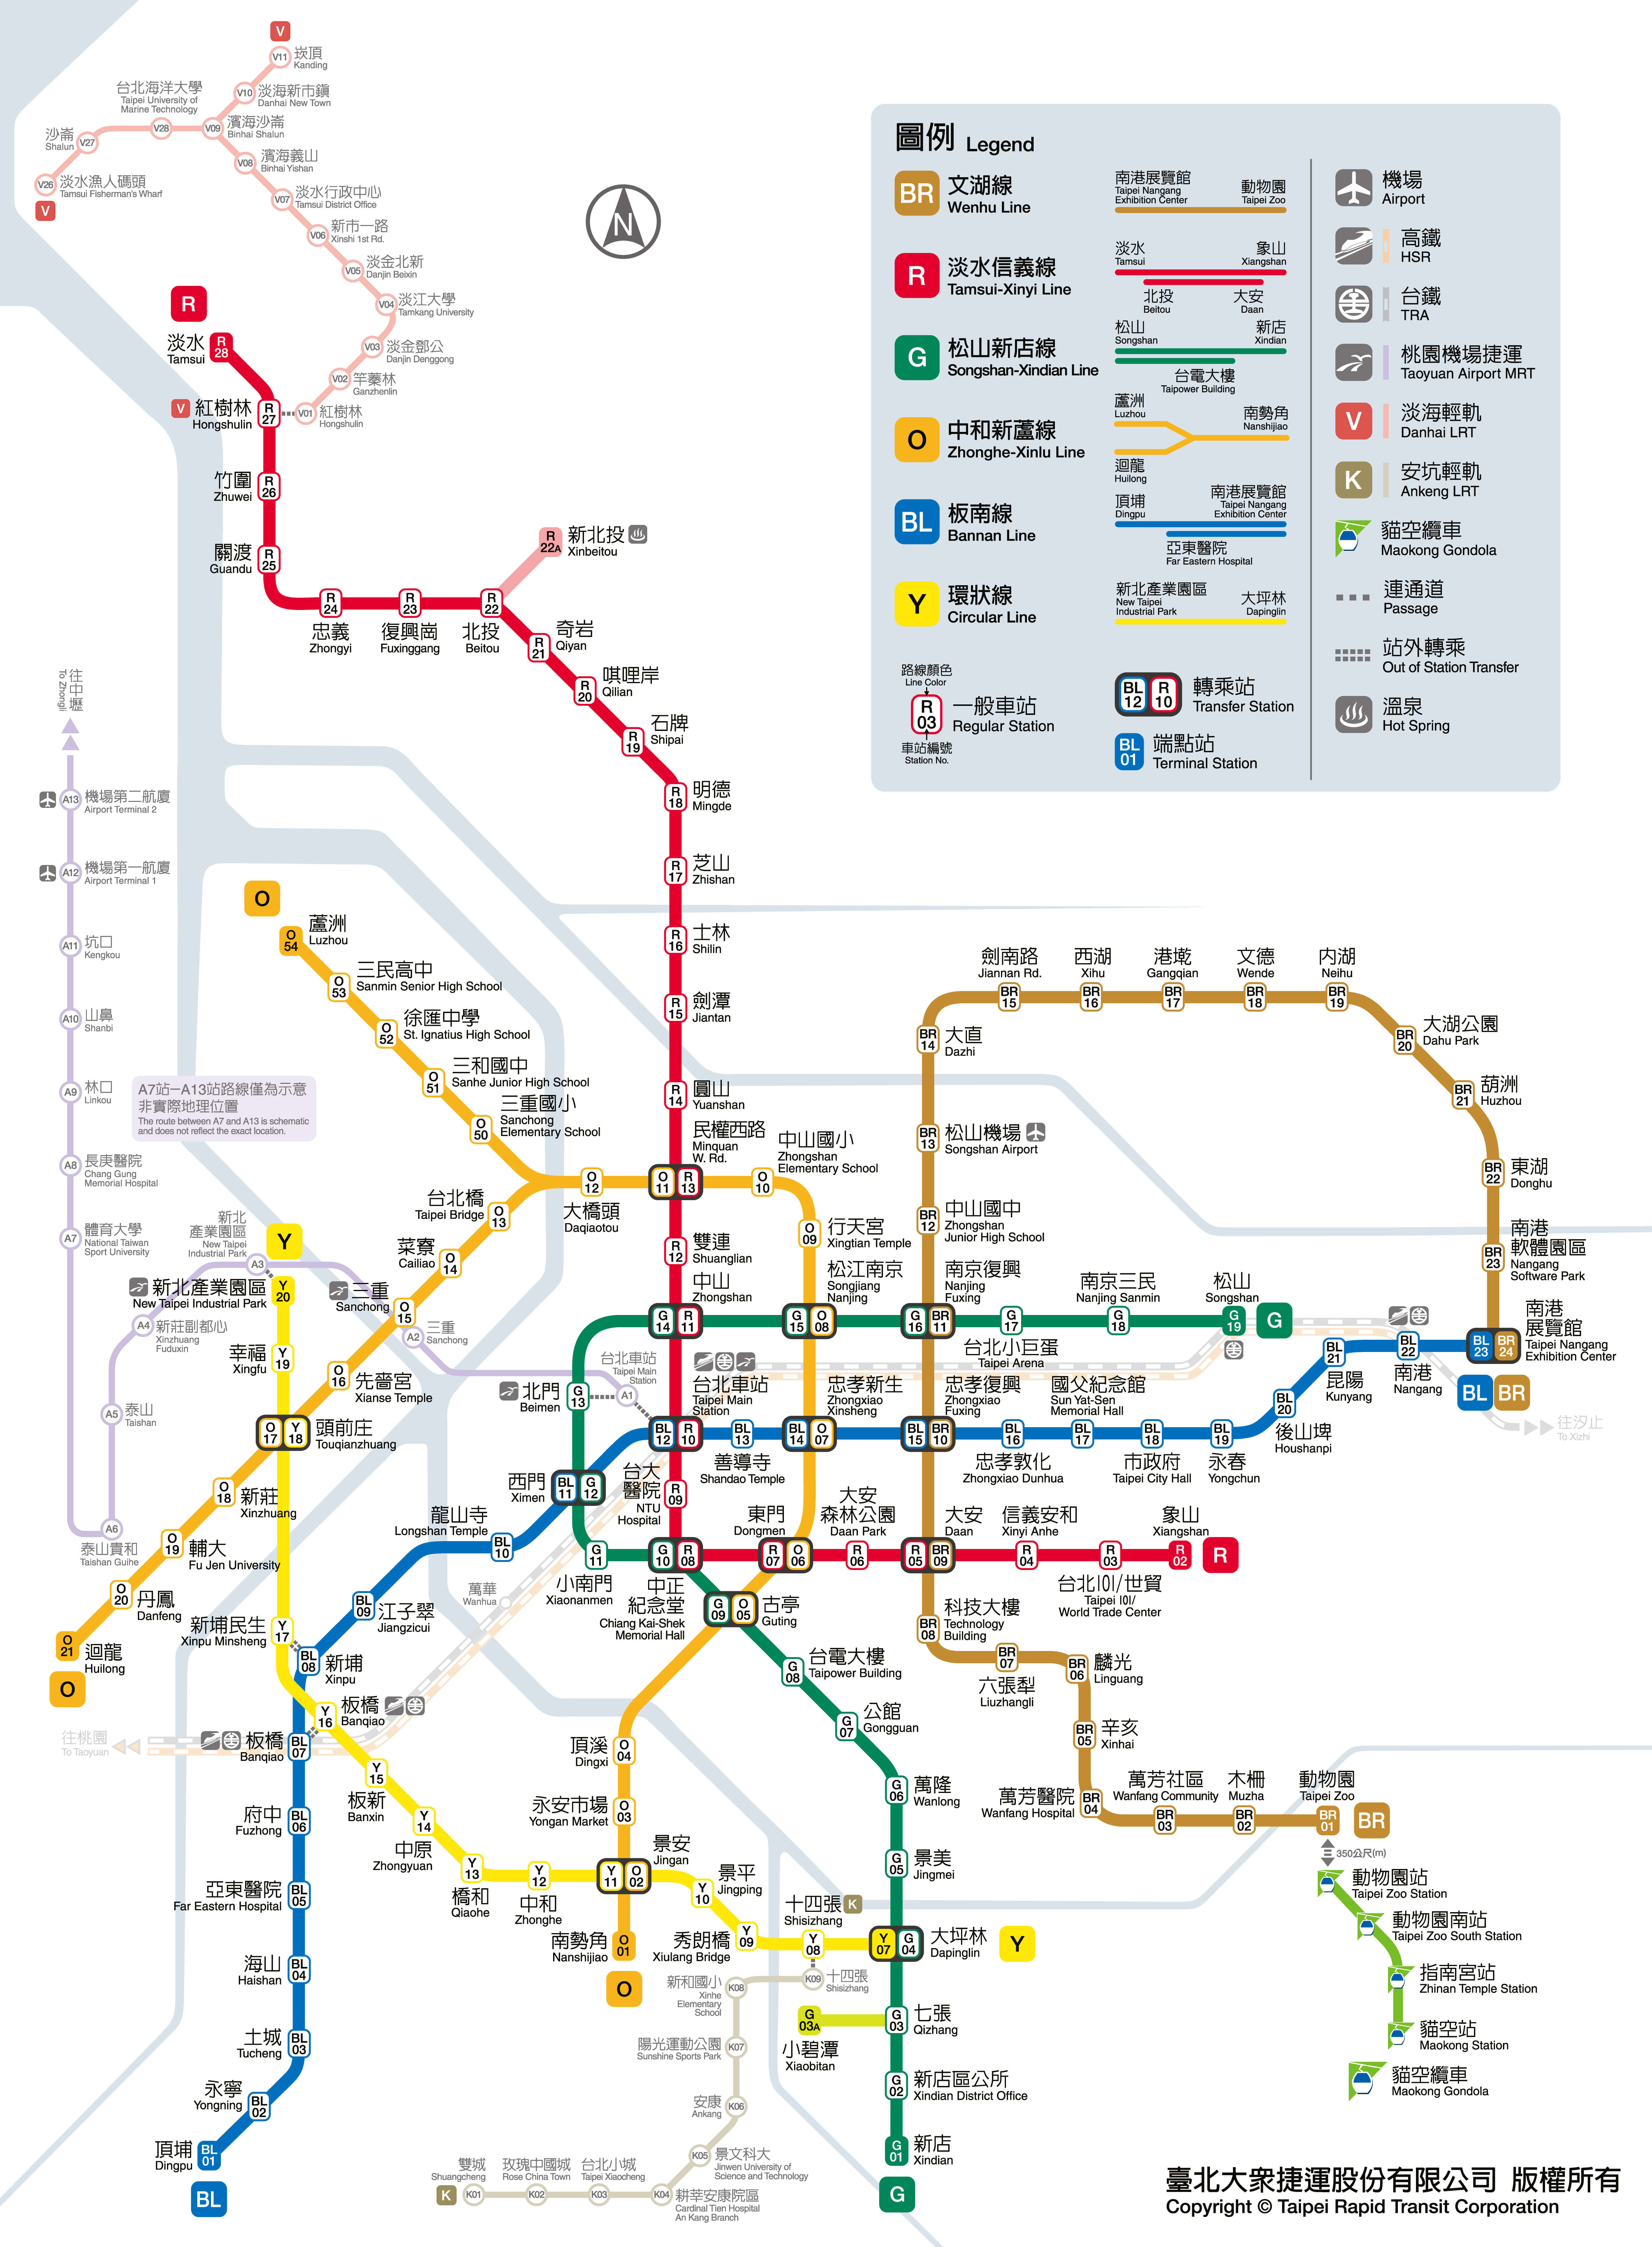 Tìm hiểu và tải Bản đồ Xe Lửa Đài Loan Chi tiết nhất